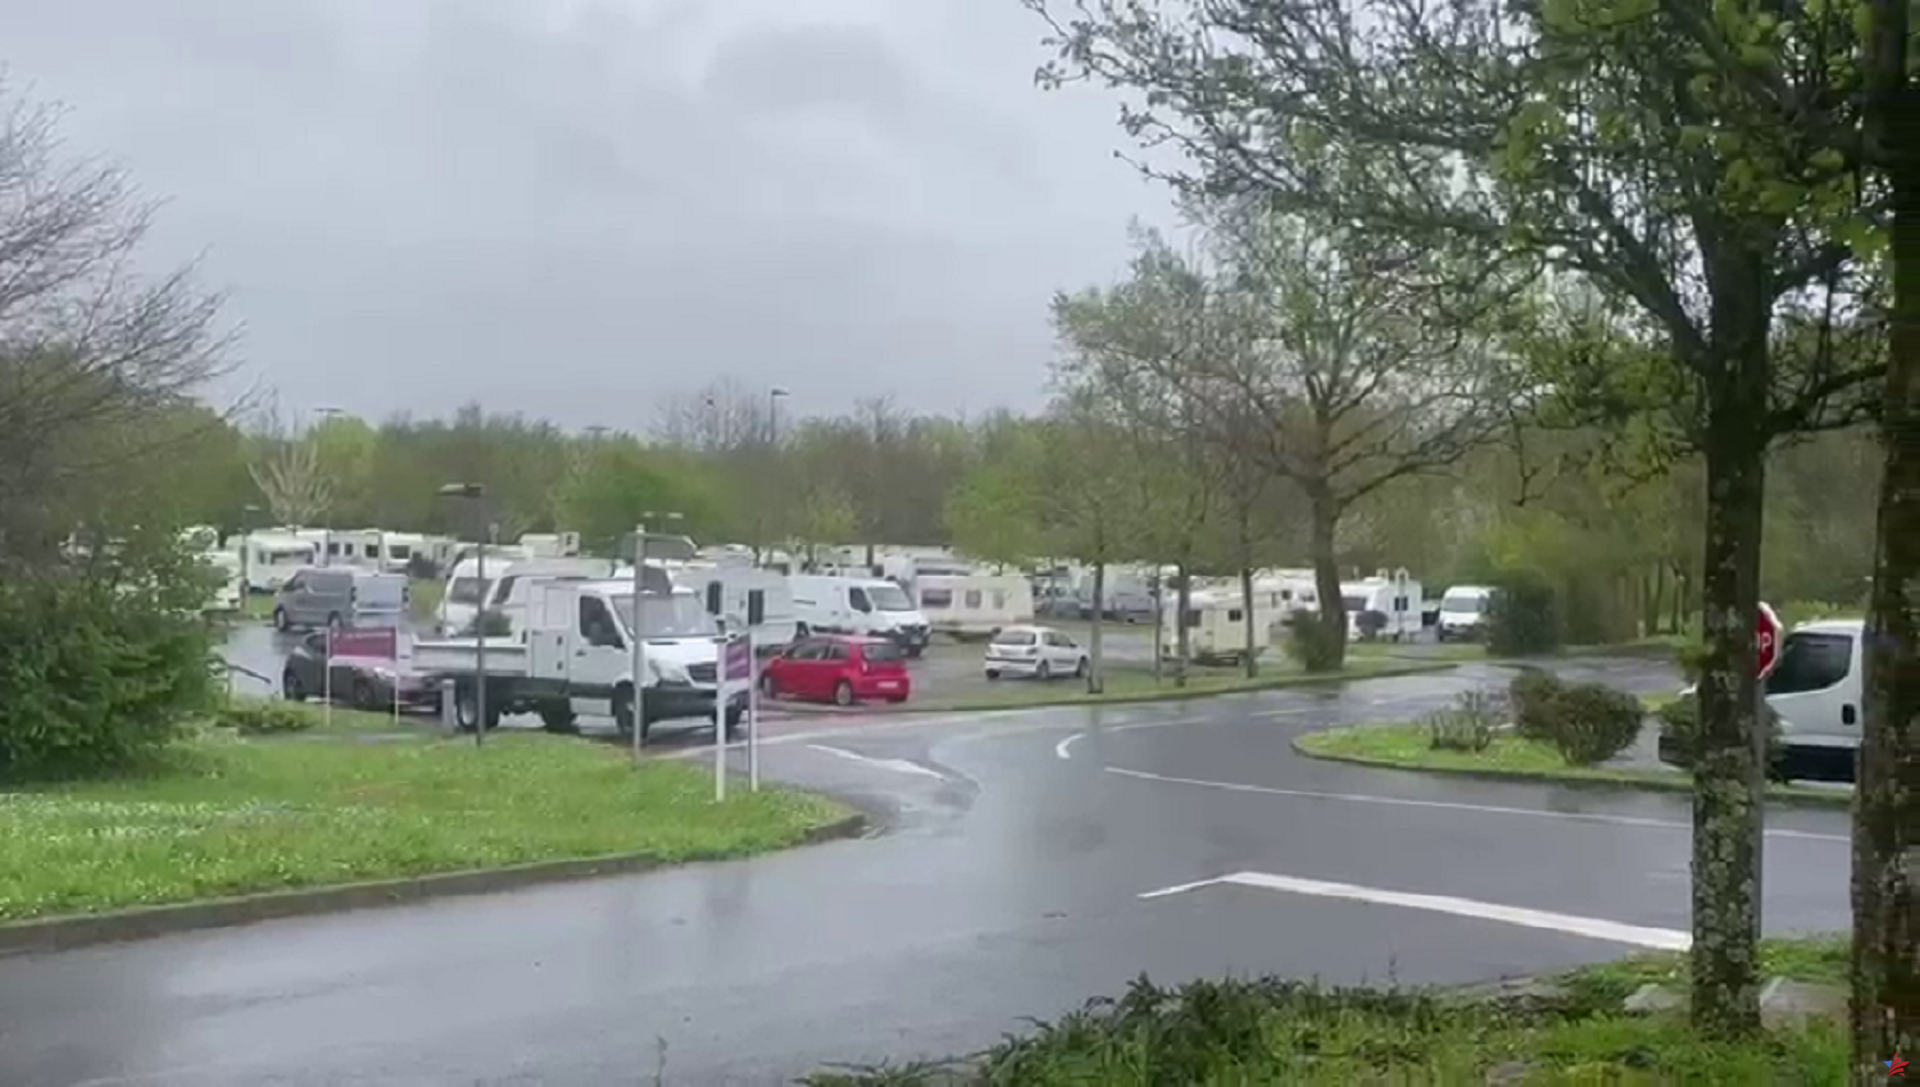 “Todos sufren pero nadie hace nada”: la llegada de caravanas a un aparcamiento preocupa a una localidad cercana a Nantes